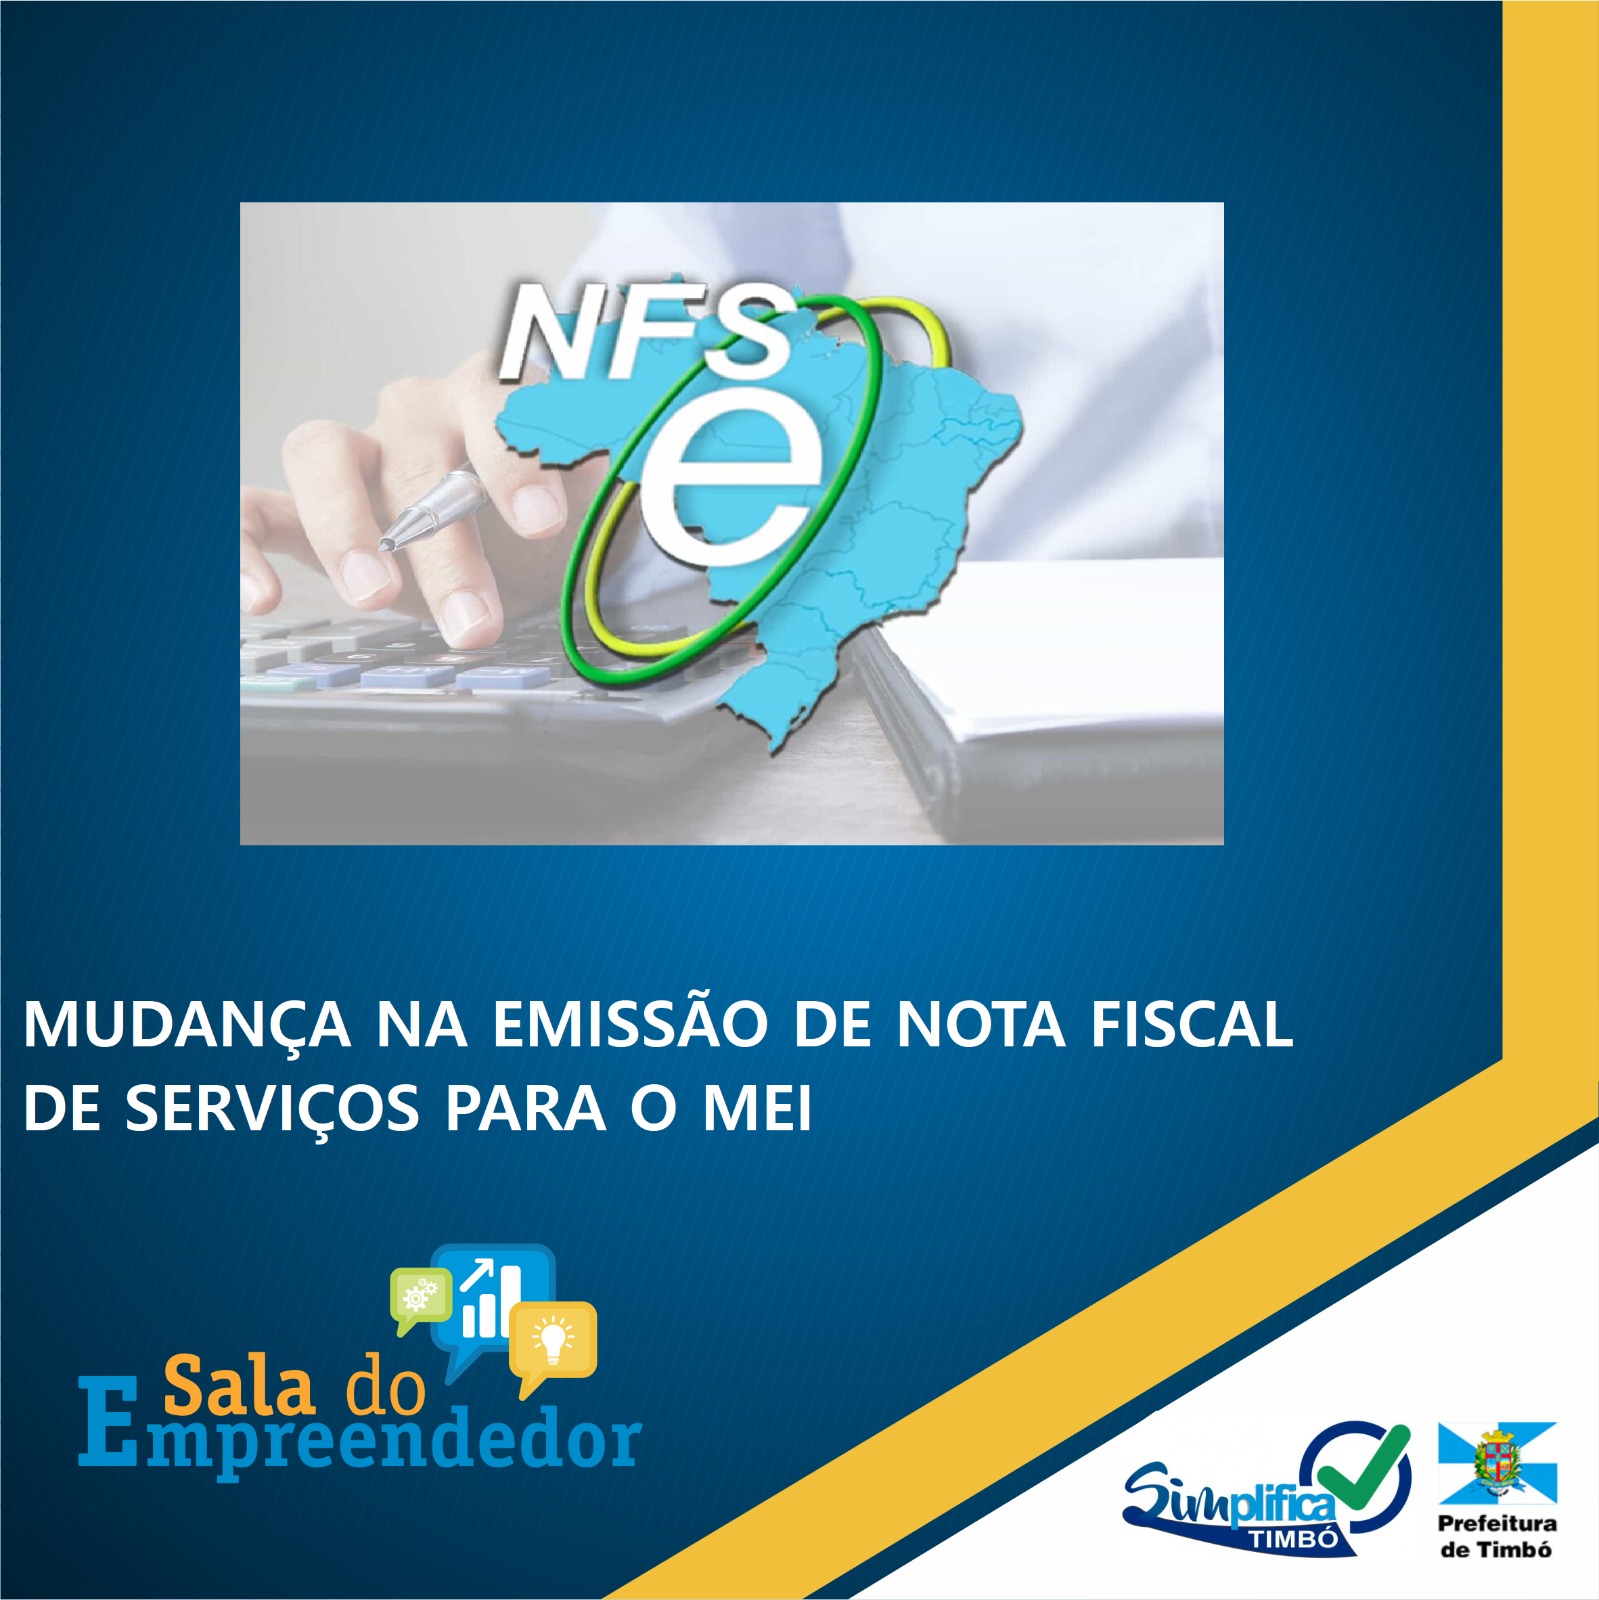 Notícia - MEI deverão emitir NFS-e pelo portal da Receita Federal -  Prefeitura da Estância Turística de Tupã